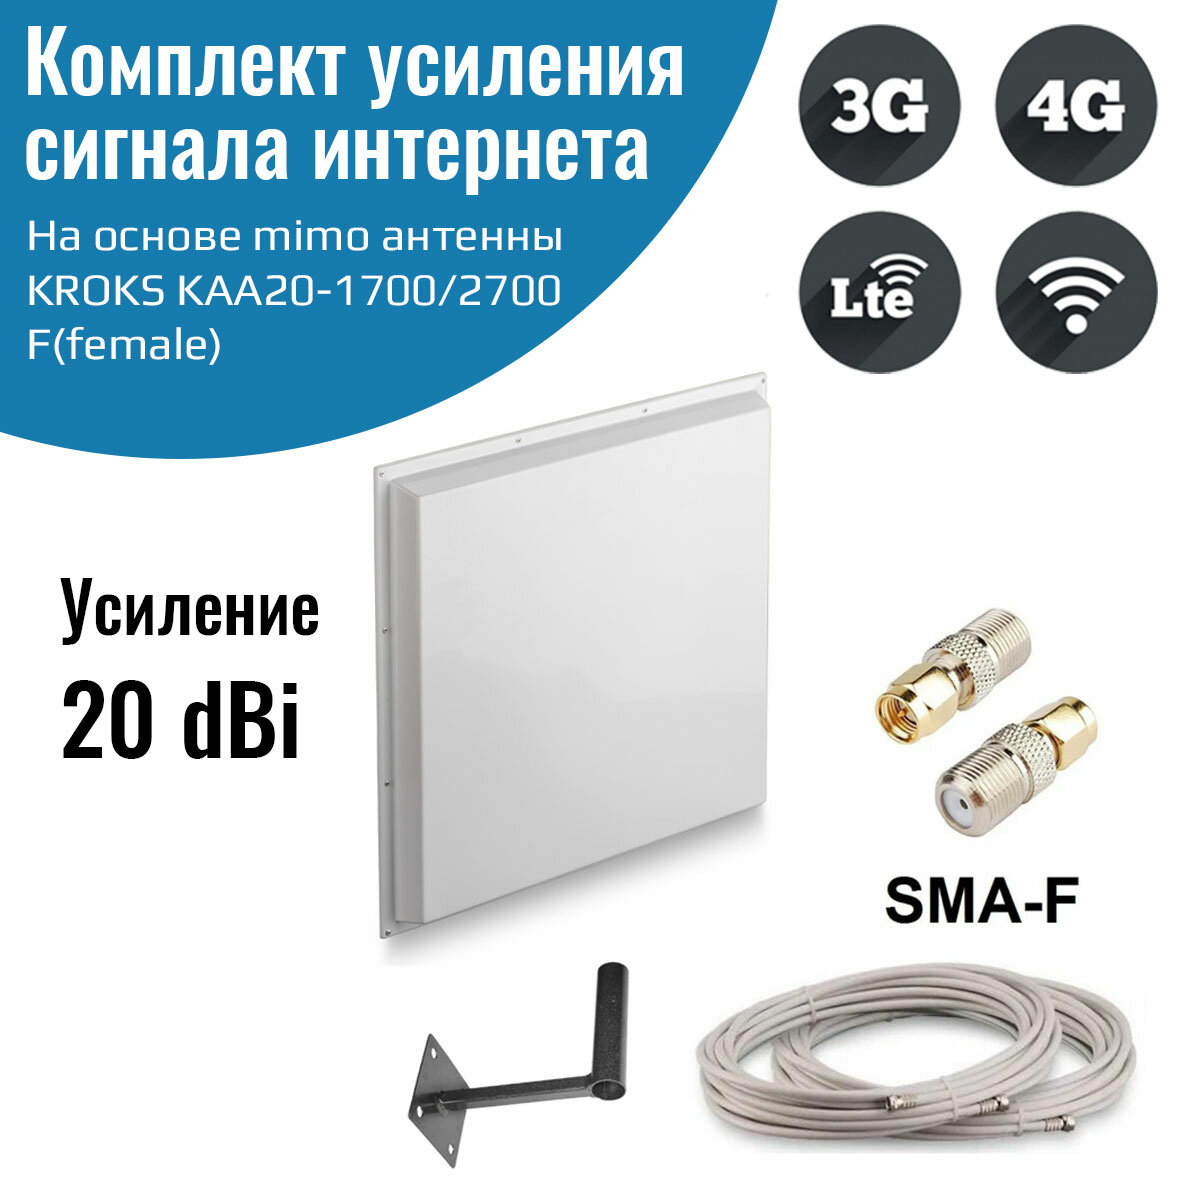 Усилитель интернет сигнала 2G/3G/WiFi/4G антенна KROKS KAA20 MIMO 20 dBi -F + кабель + кронштейн + переходники SMA